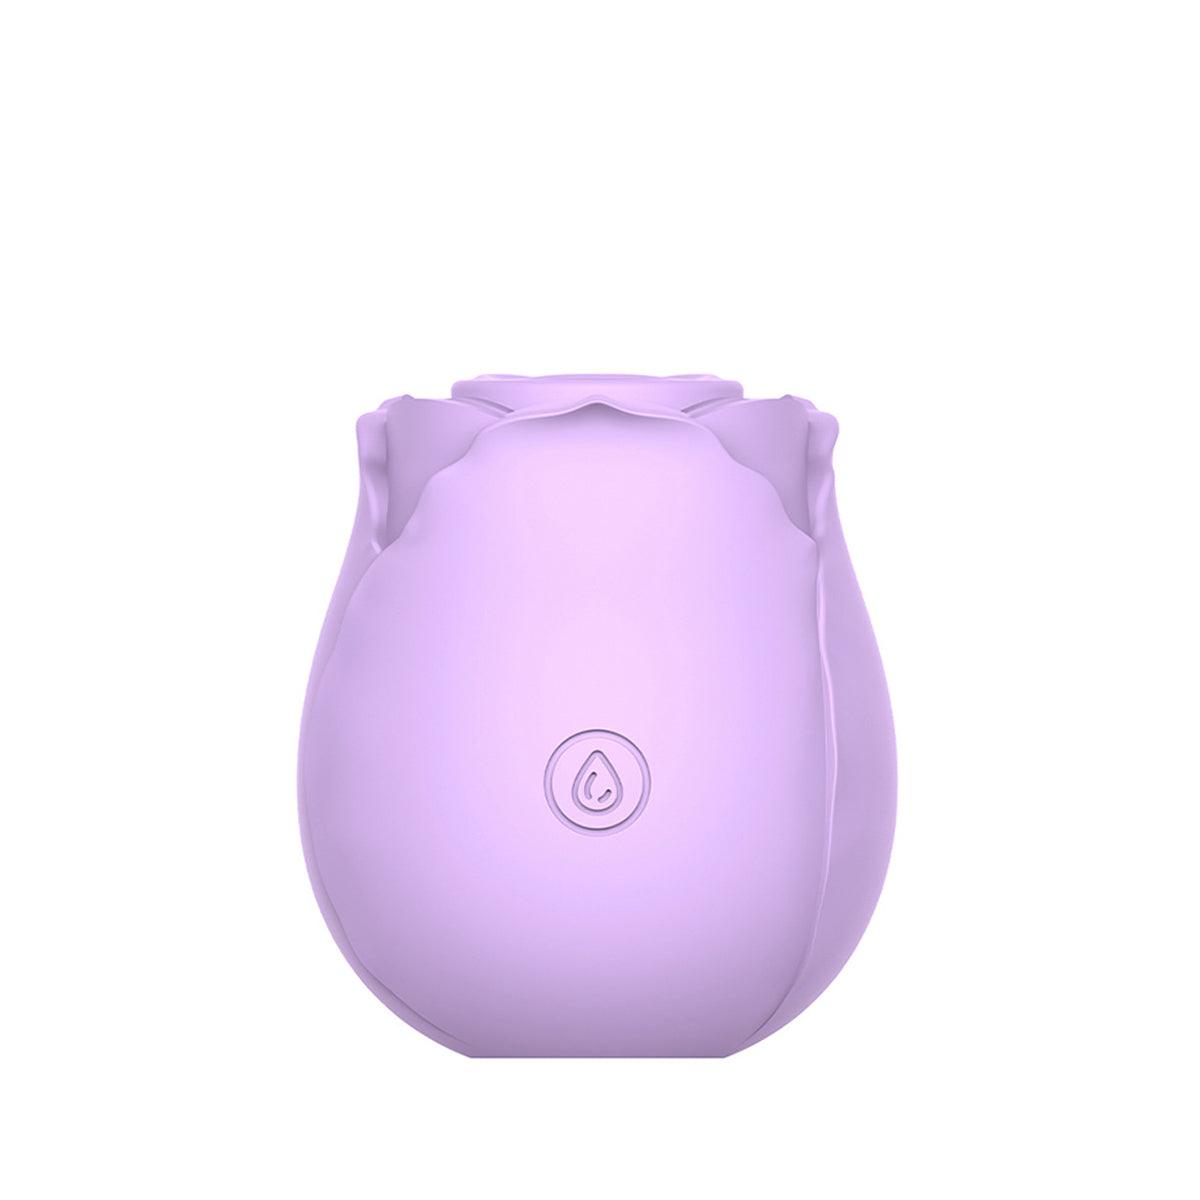 https://shopenby.com/cdn/shop/products/inbloom-rosales-sucking-vibrator-lavender-shop-enby-1_1600x.jpg?v=1694334776